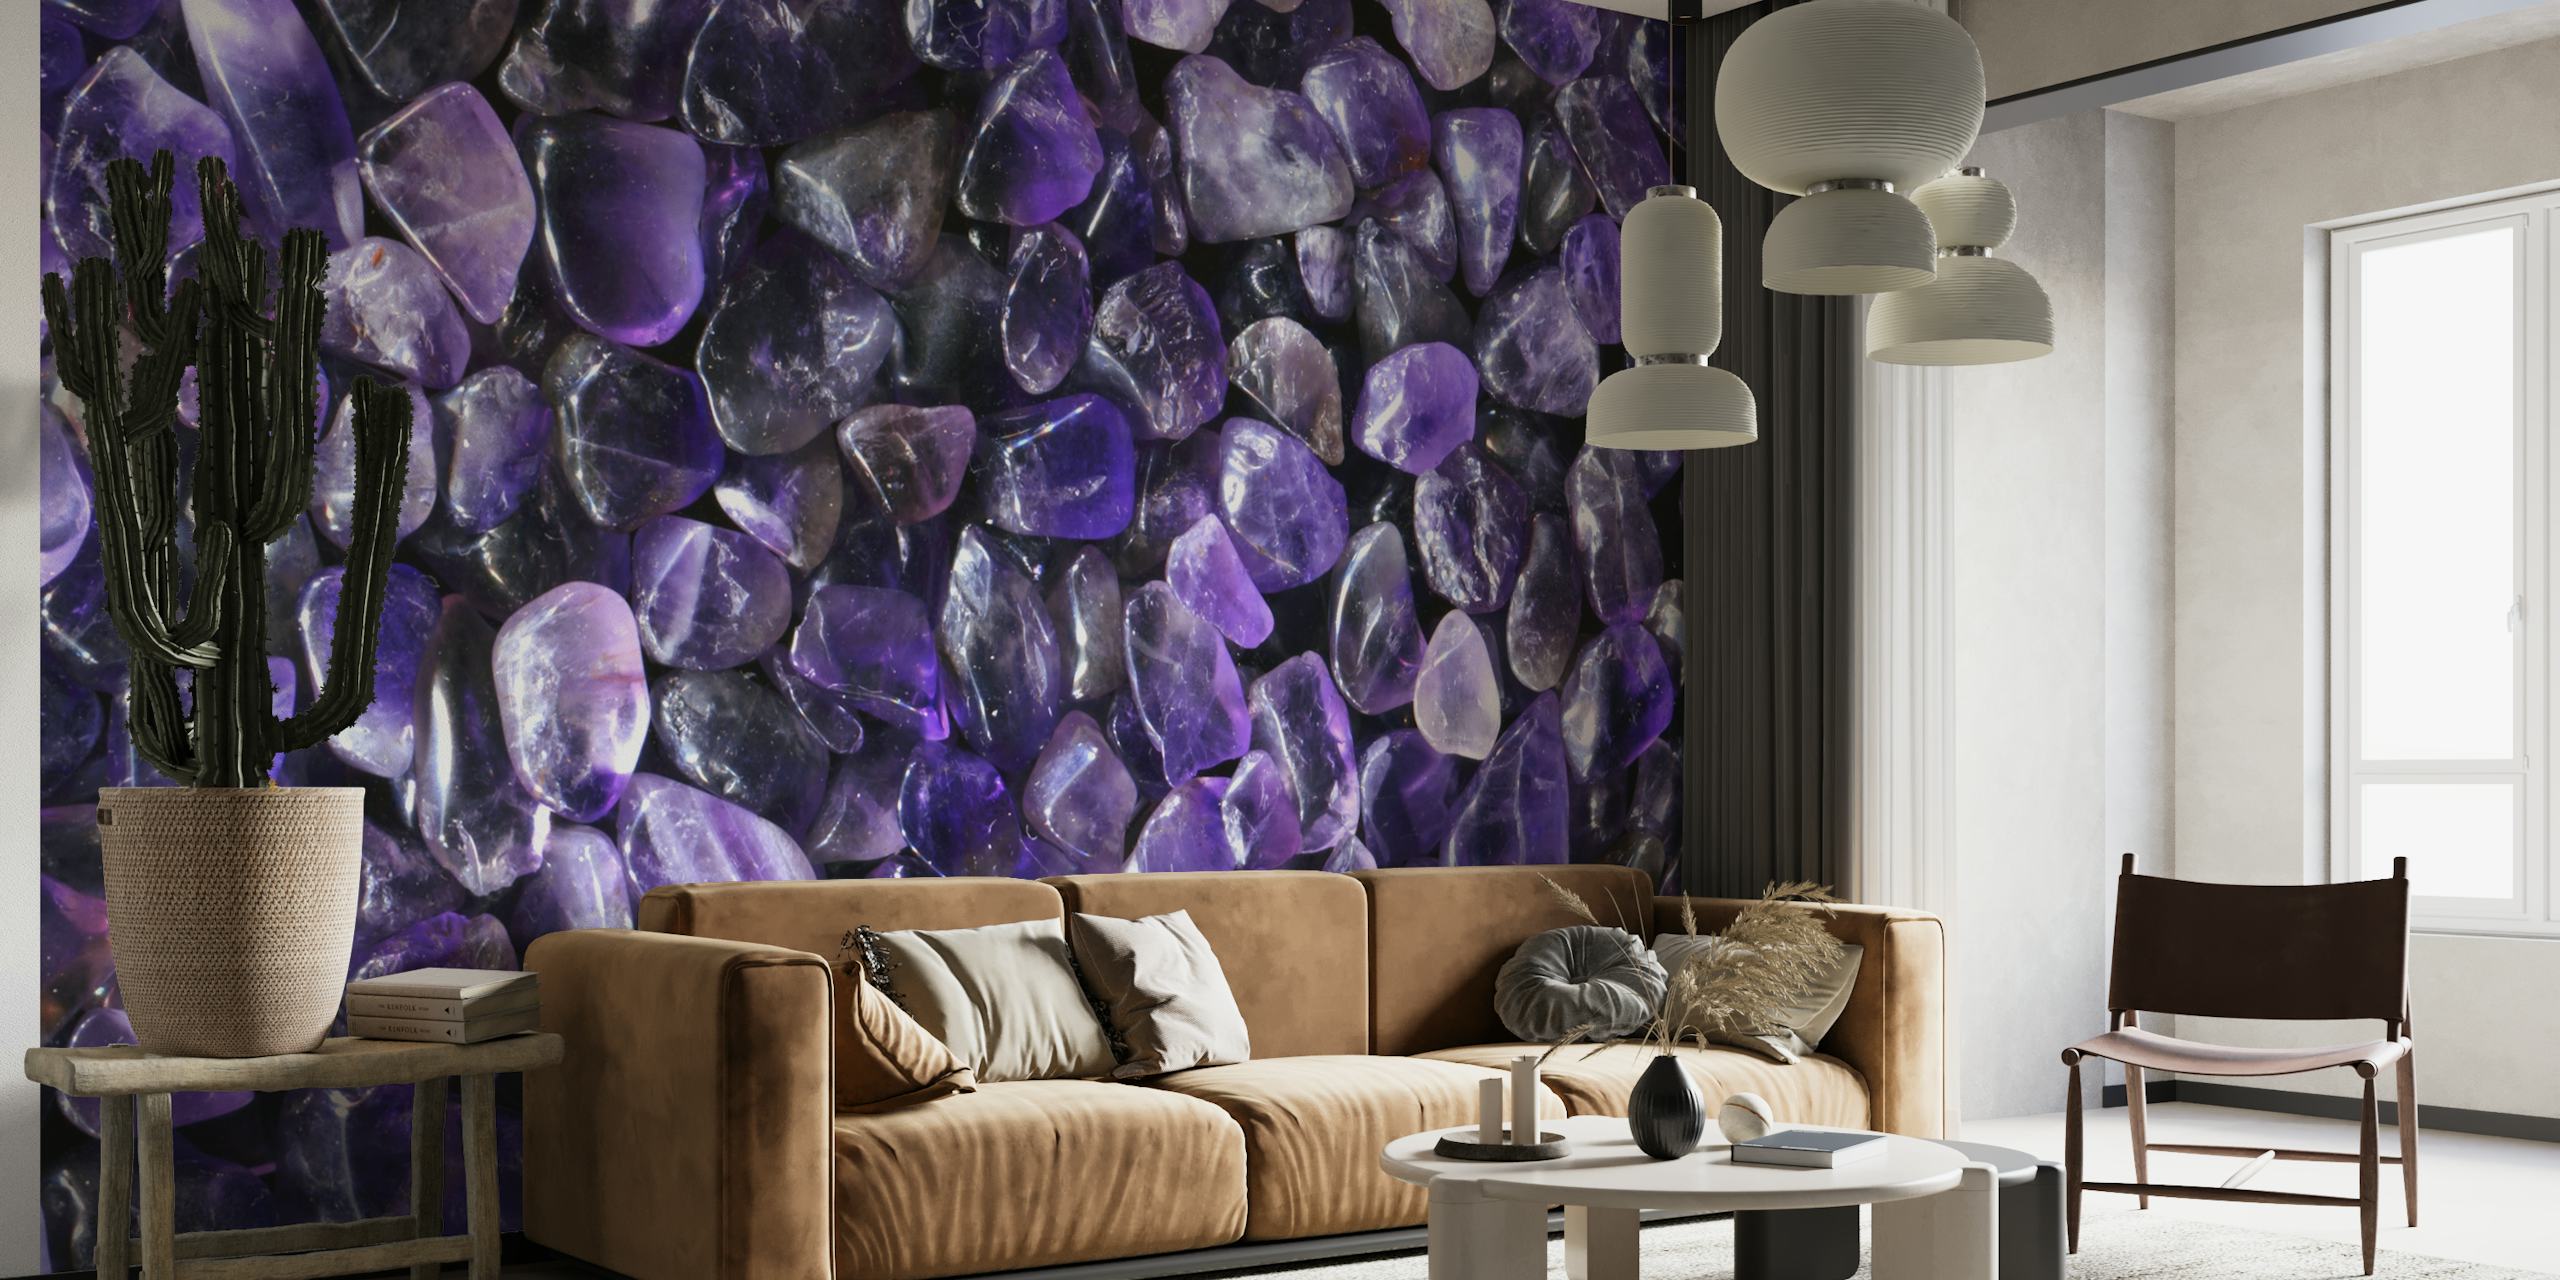 Fotomural vinílico de parede de pedras preciosas lilás com uma generosa variedade de pedras cristalinas roxas